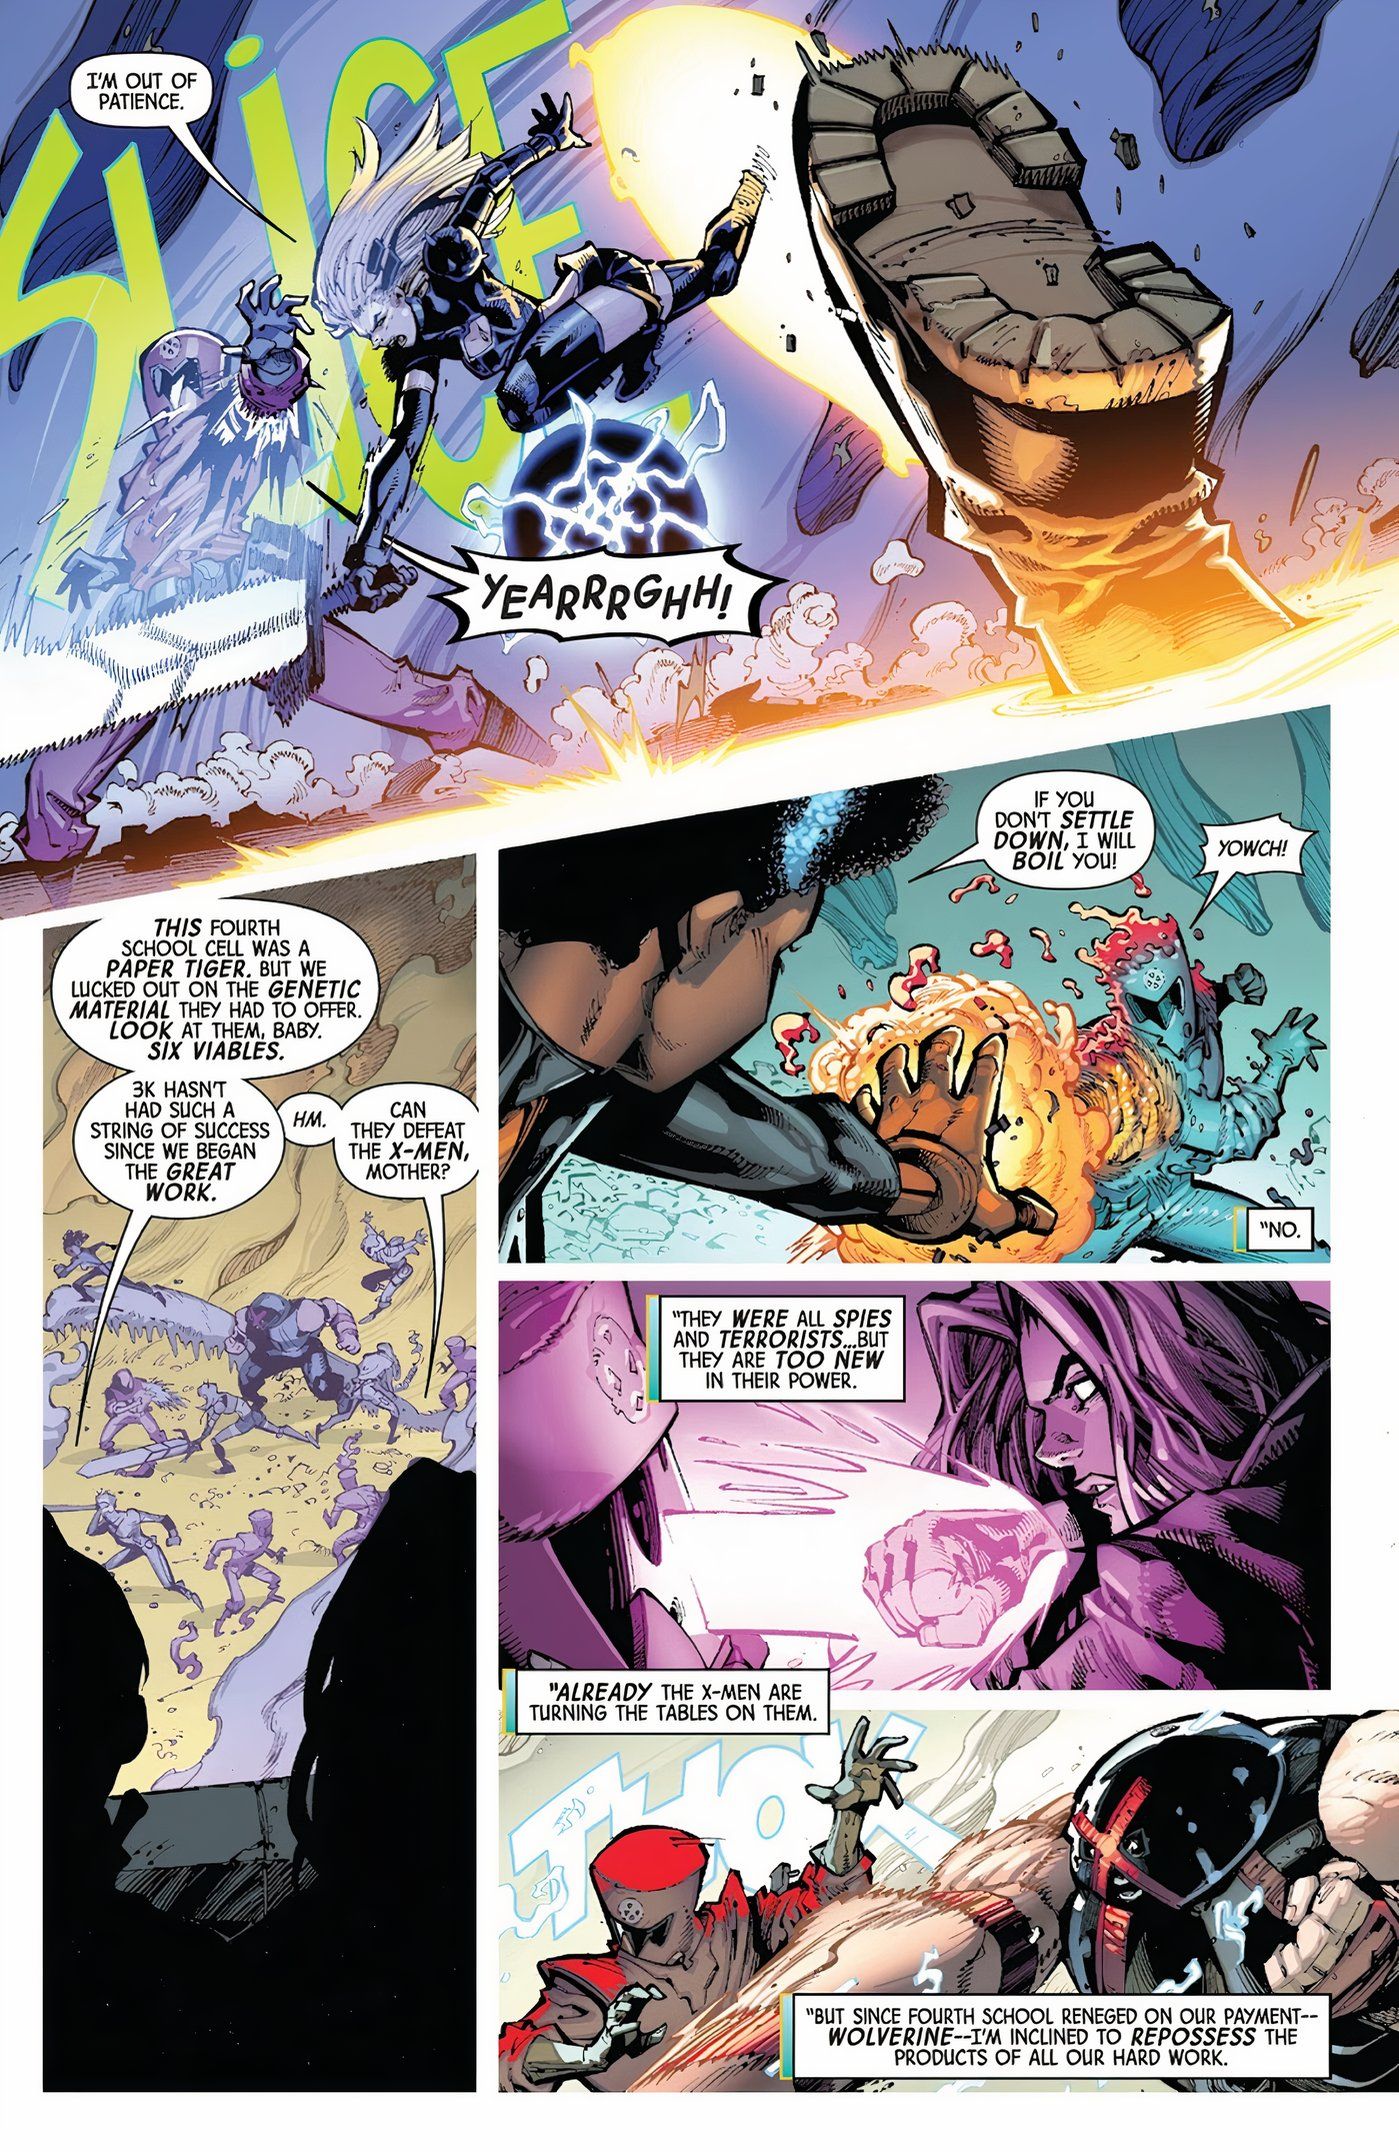 X-Men #1 fighting new mutants